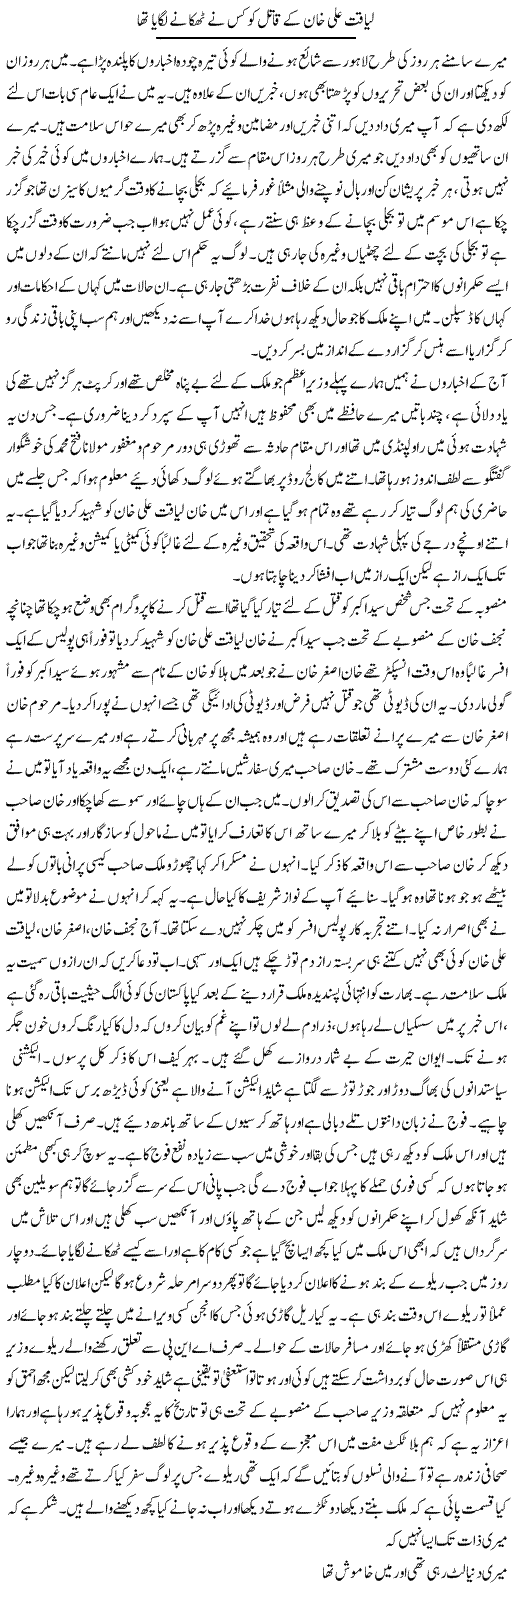 Liaquat Ali Khan Express Column Abdul Qadir 16 October 2011